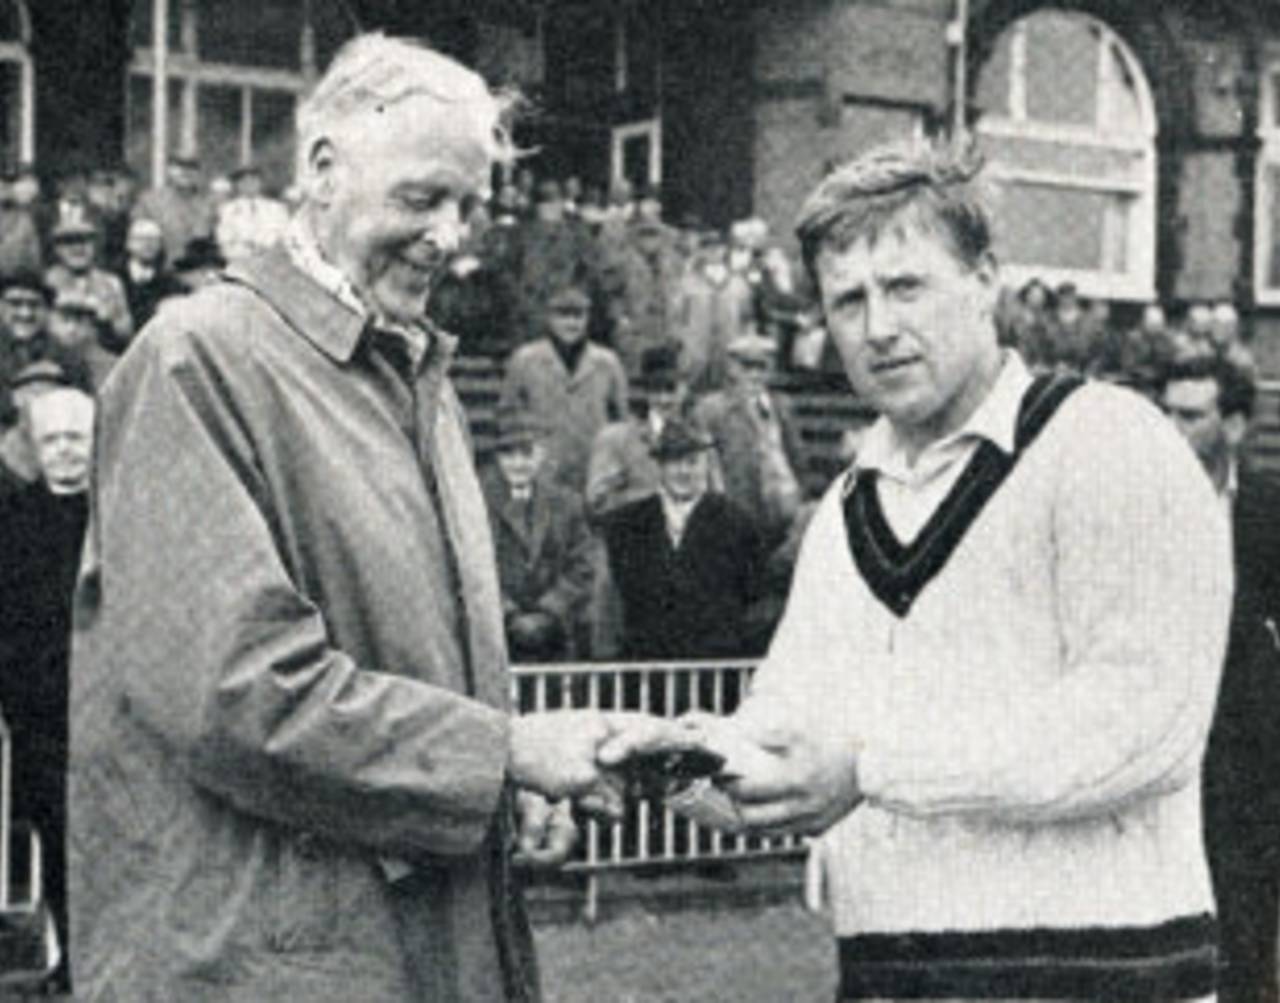 Peter Marner receives the first Man-of-the-Match award from Frank Woolley&nbsp;&nbsp;&bull;&nbsp;&nbsp;Playfair Cricket Monthly